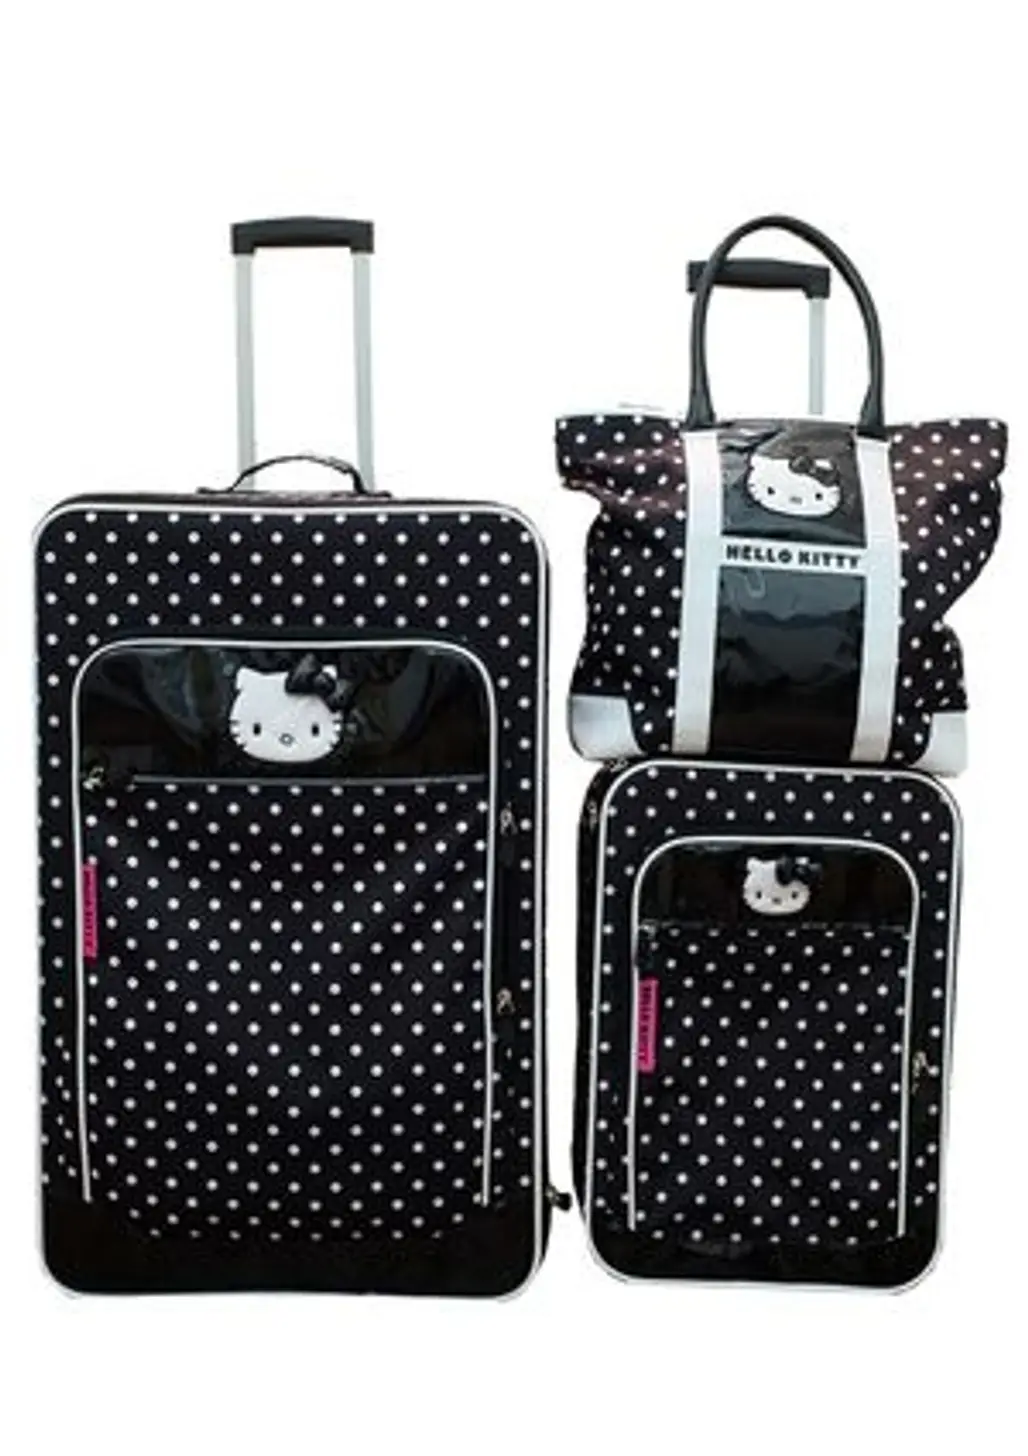 Hello Kitty Luggage Set